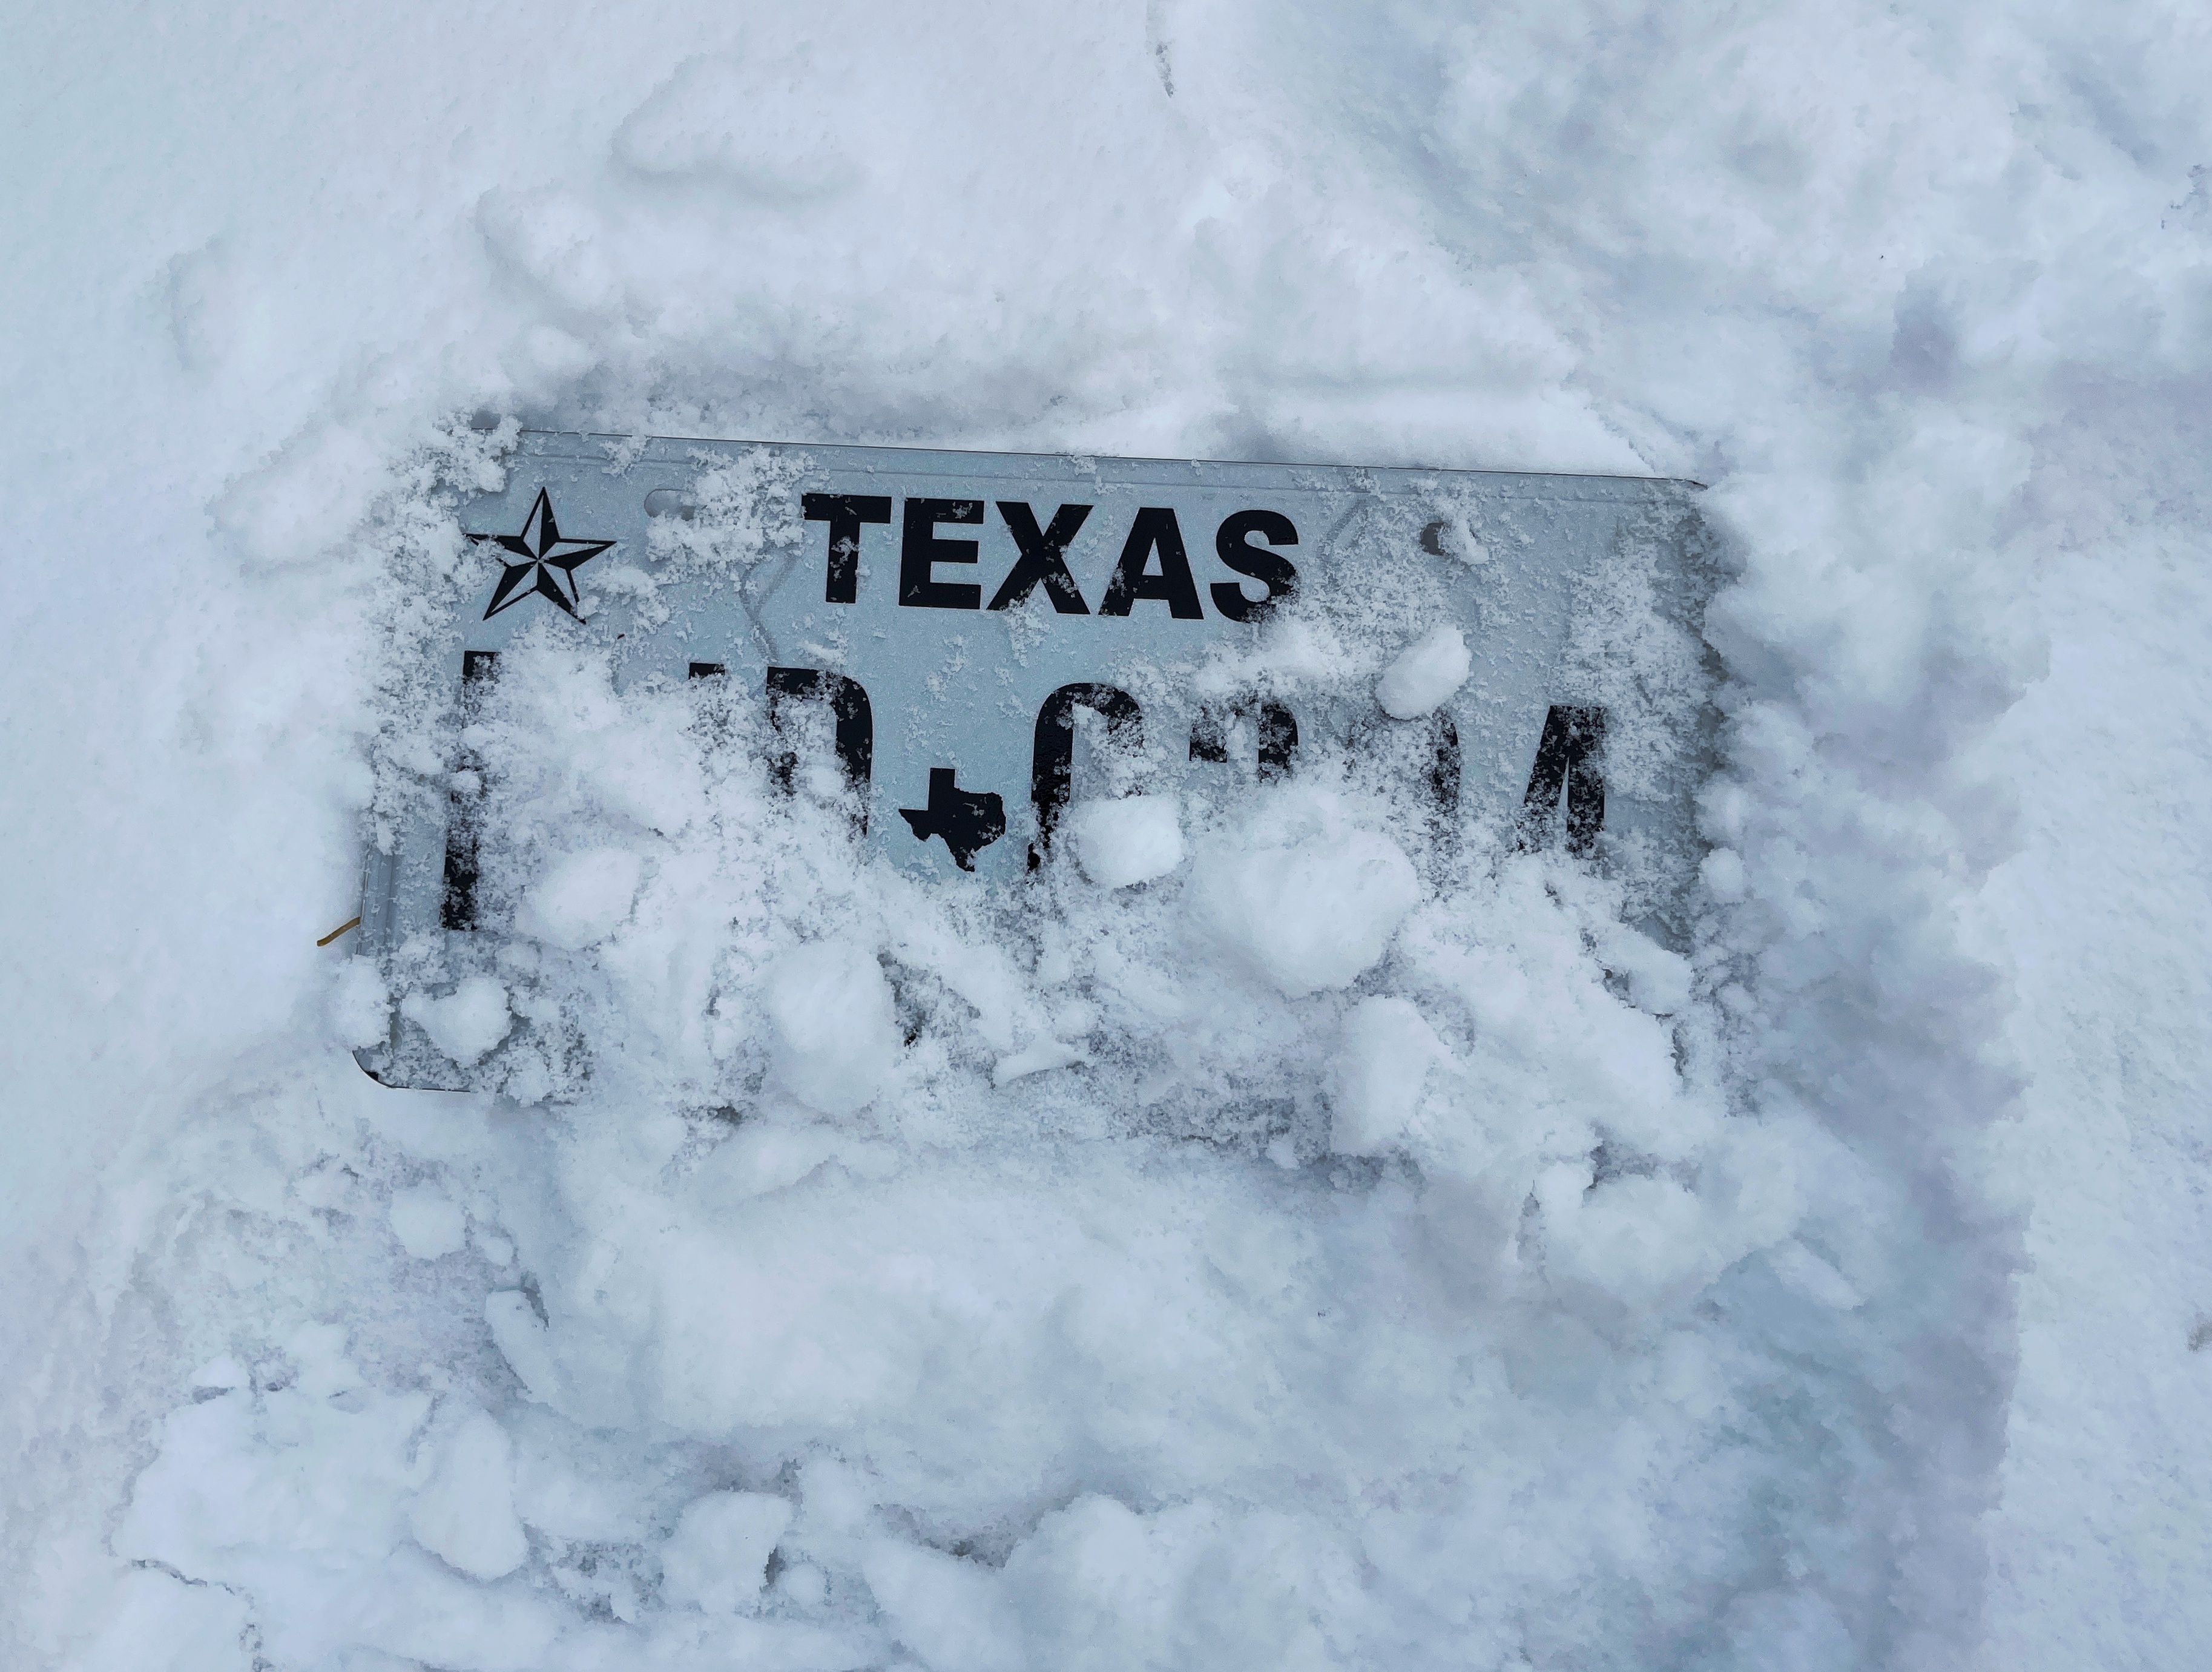 Kältewelle in Texas, verschneites Kennzeichen 